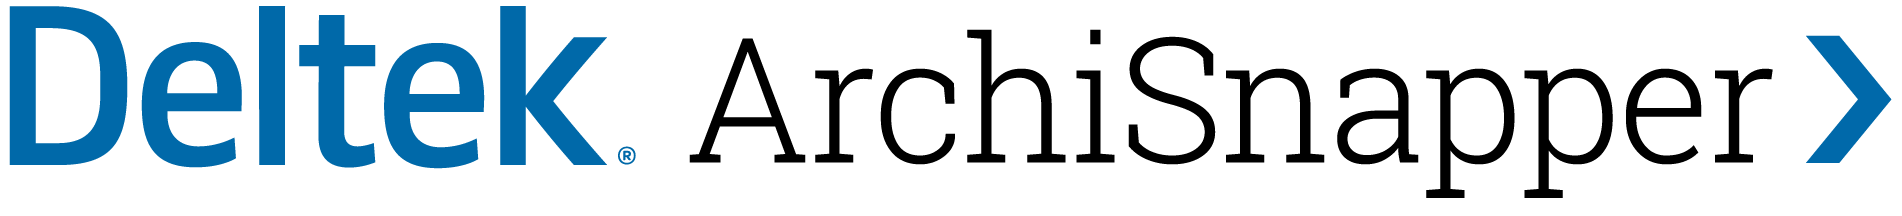 Deltek archisnapper logo